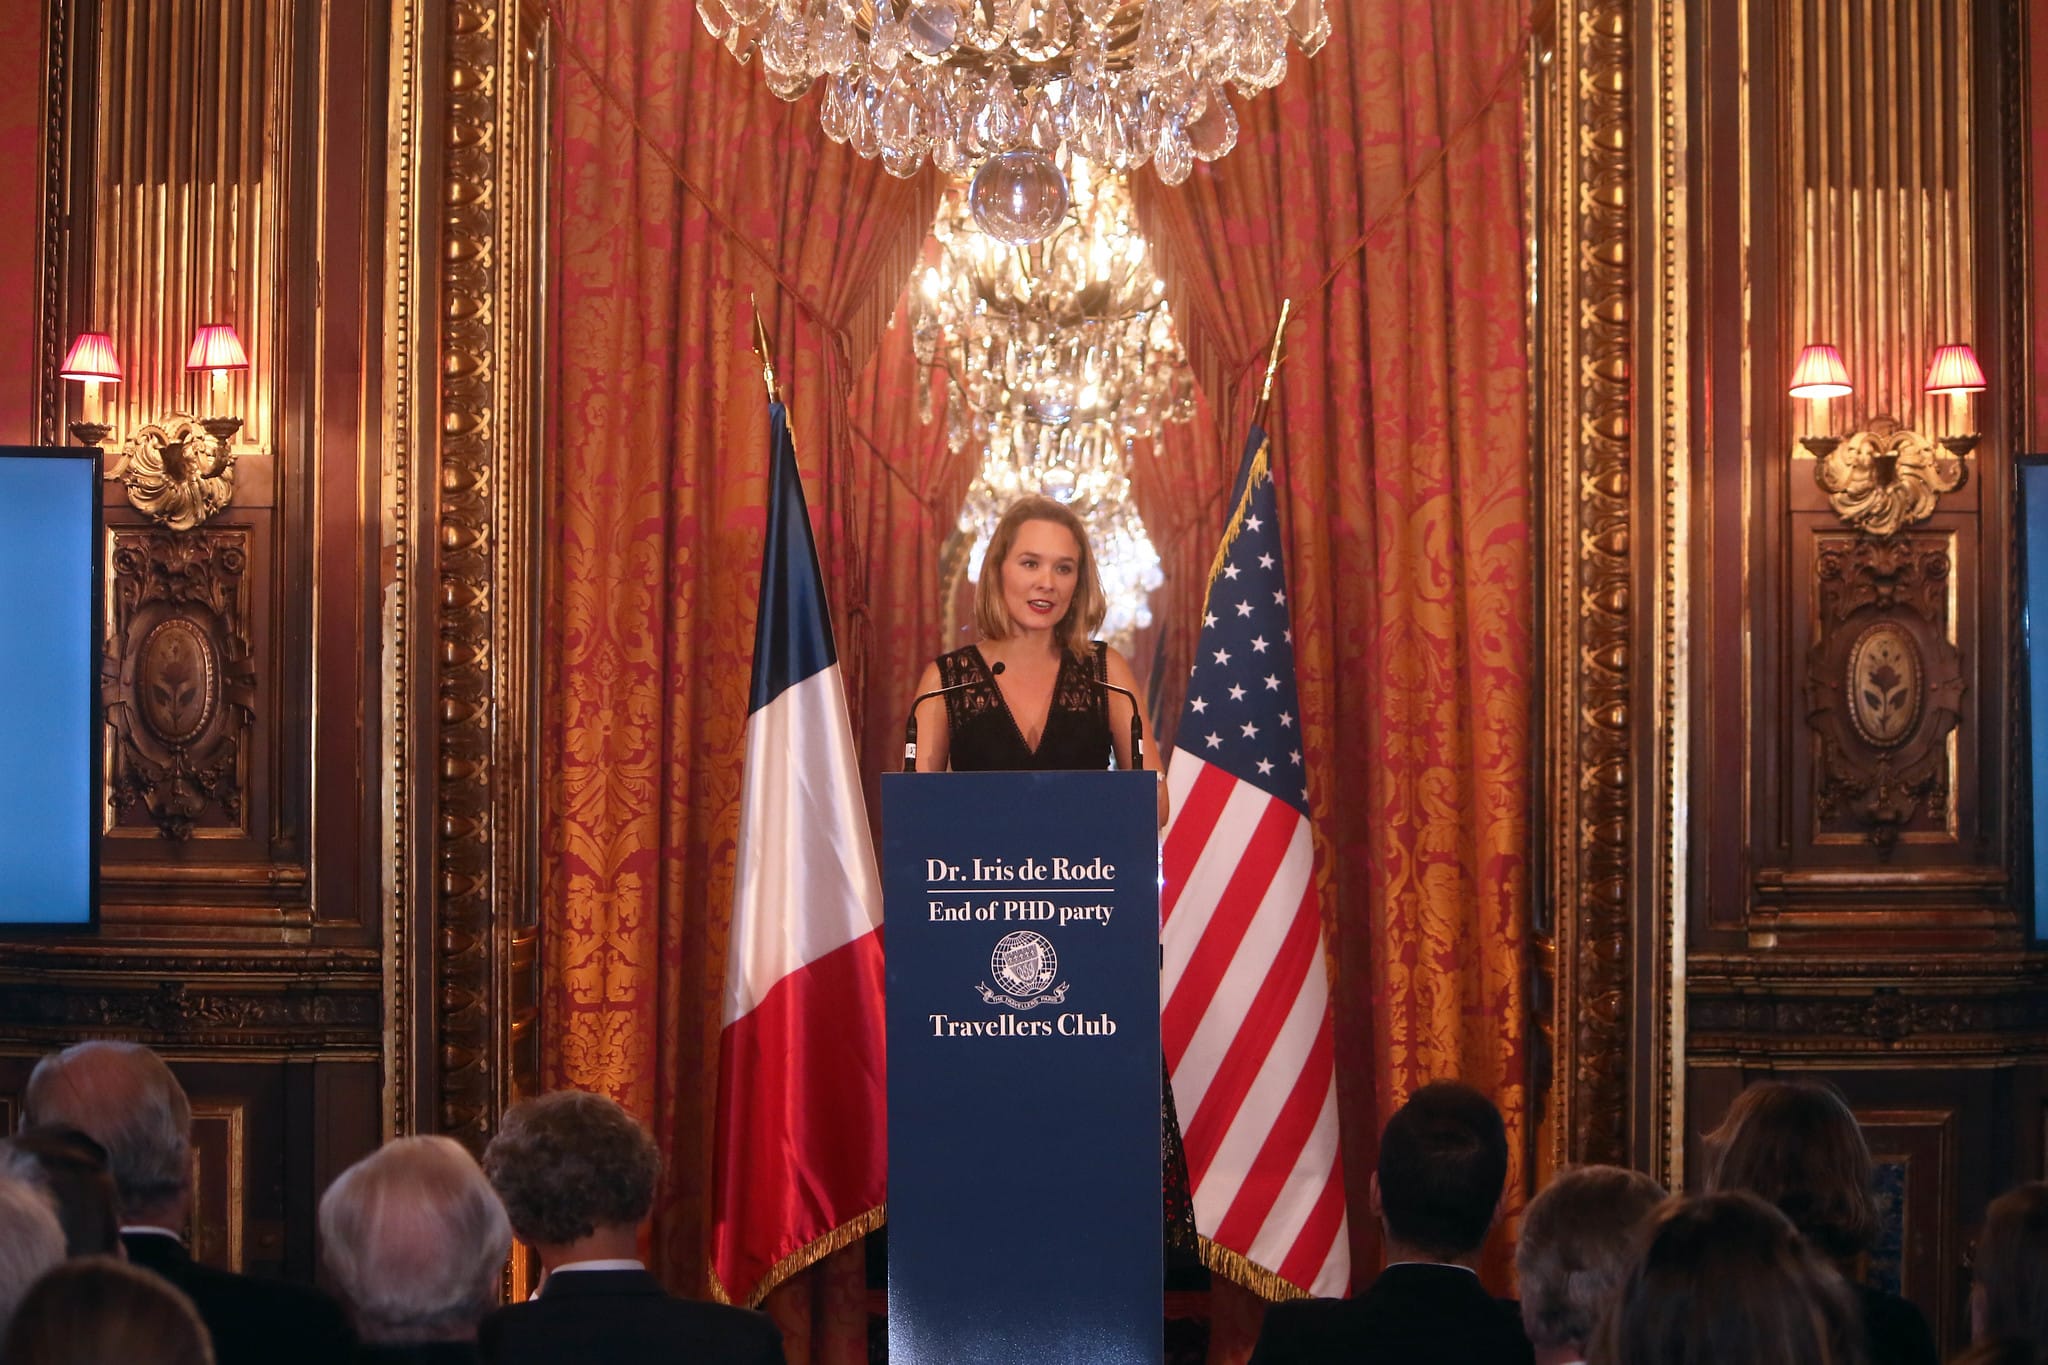 Iris de Rode PhD Paris speech pitch discours agence wato paris travellers club paris